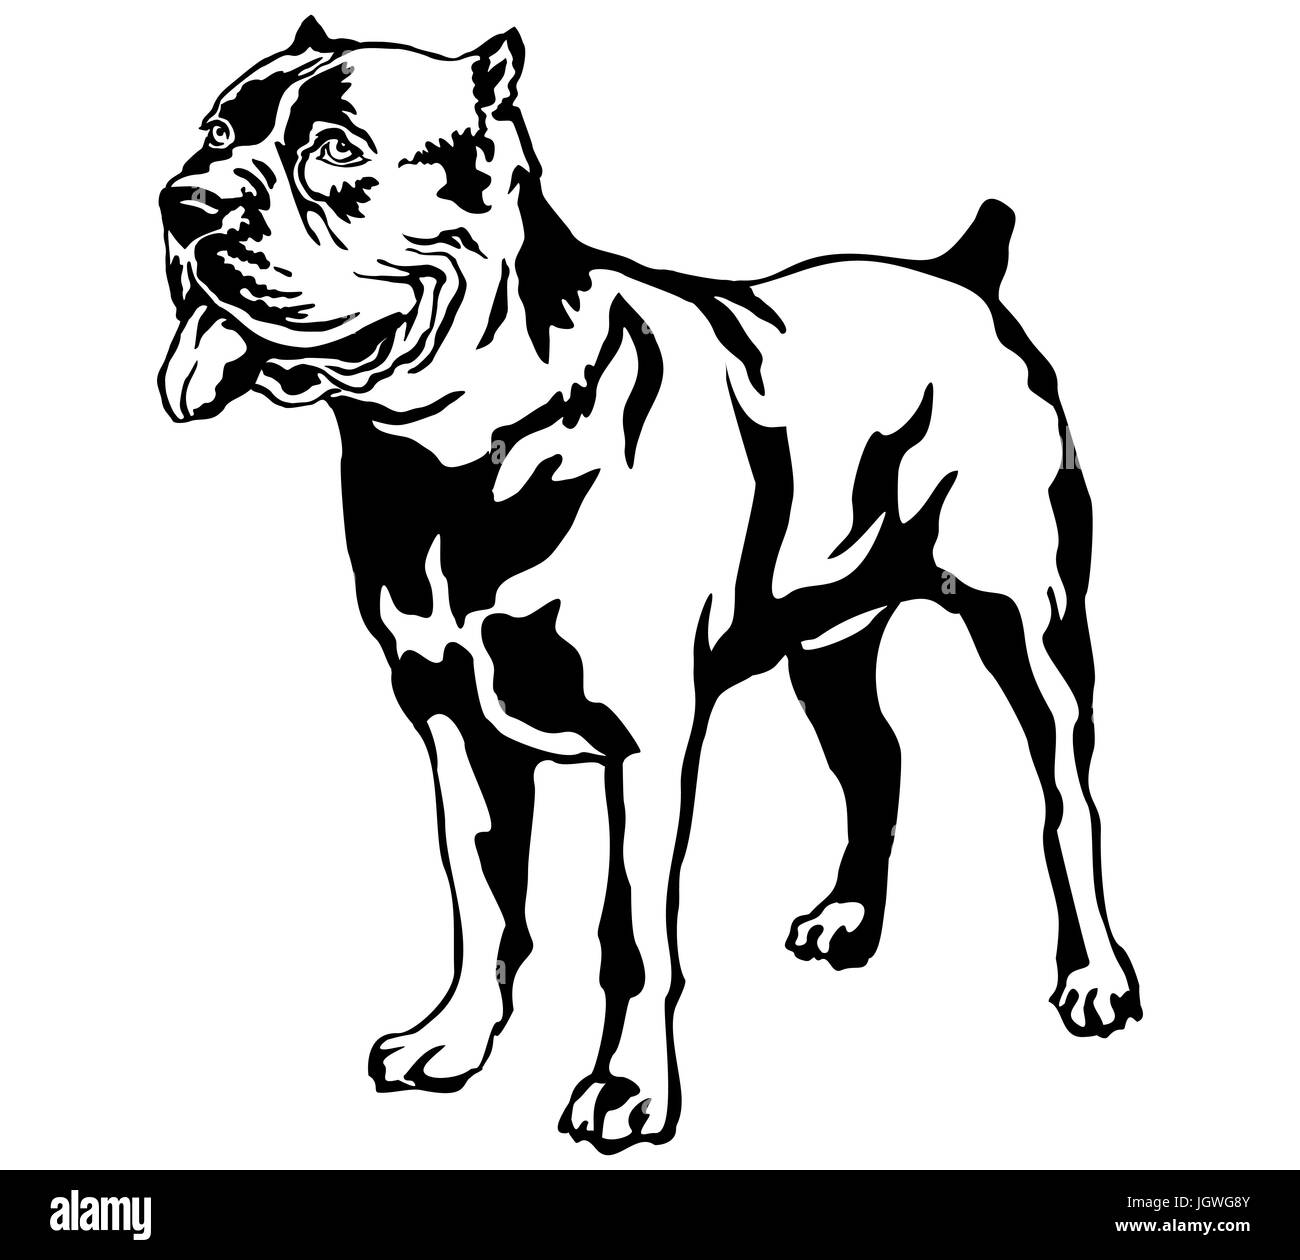 Portrait de décoration de l'article profil de chien cane corso italiano vector illustration en couleur noir isolé sur fond blanc Illustration de Vecteur